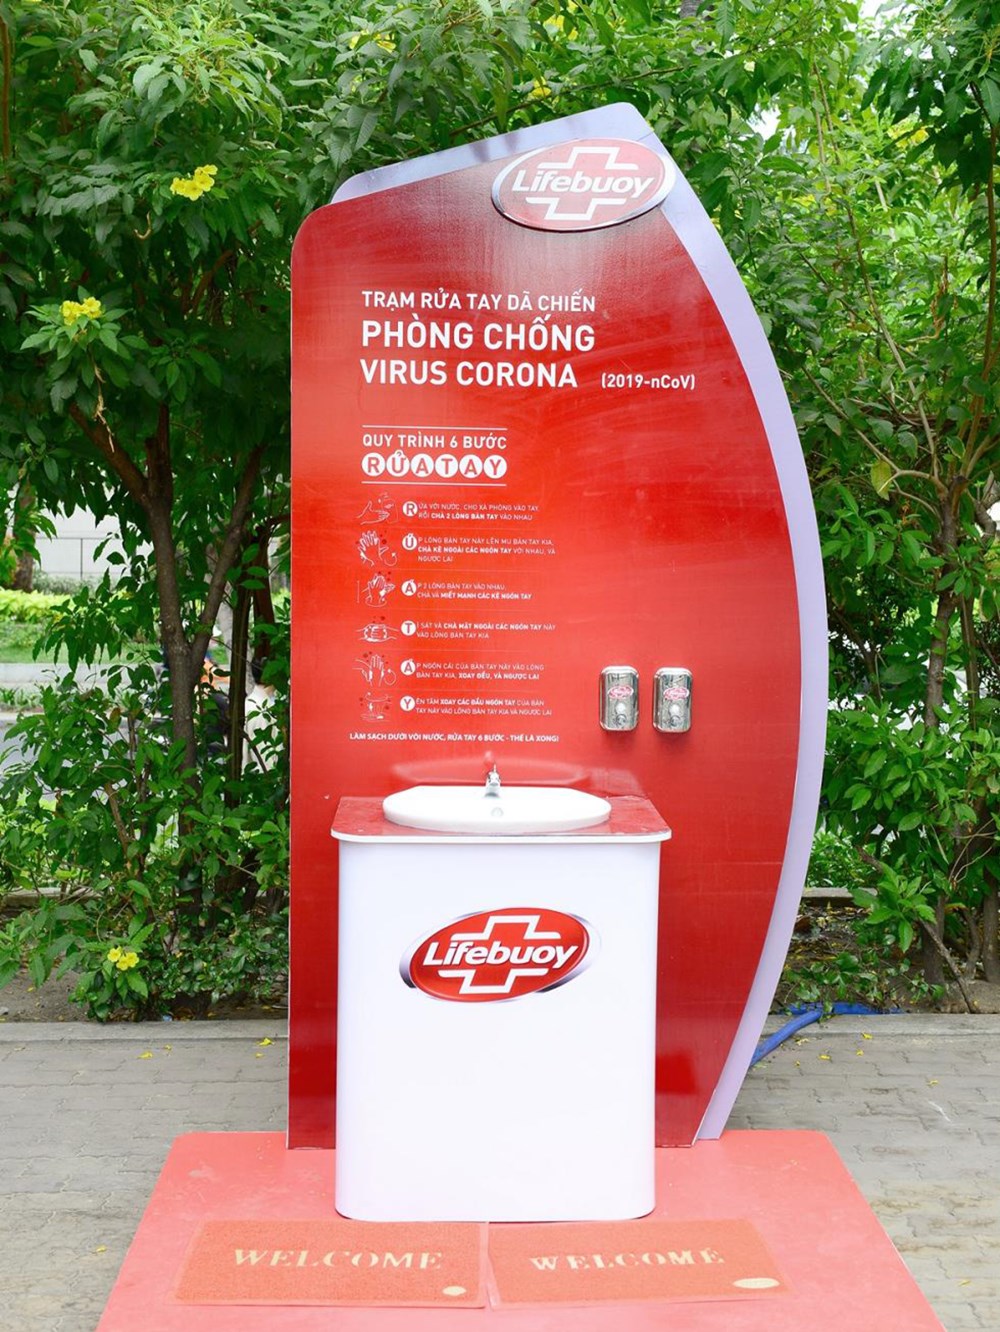 Trạm rửa tay dã chiến Lifebuoy cung cấp đầy đủ nước sạch và xà phòng sạch khuẩn miễn phí